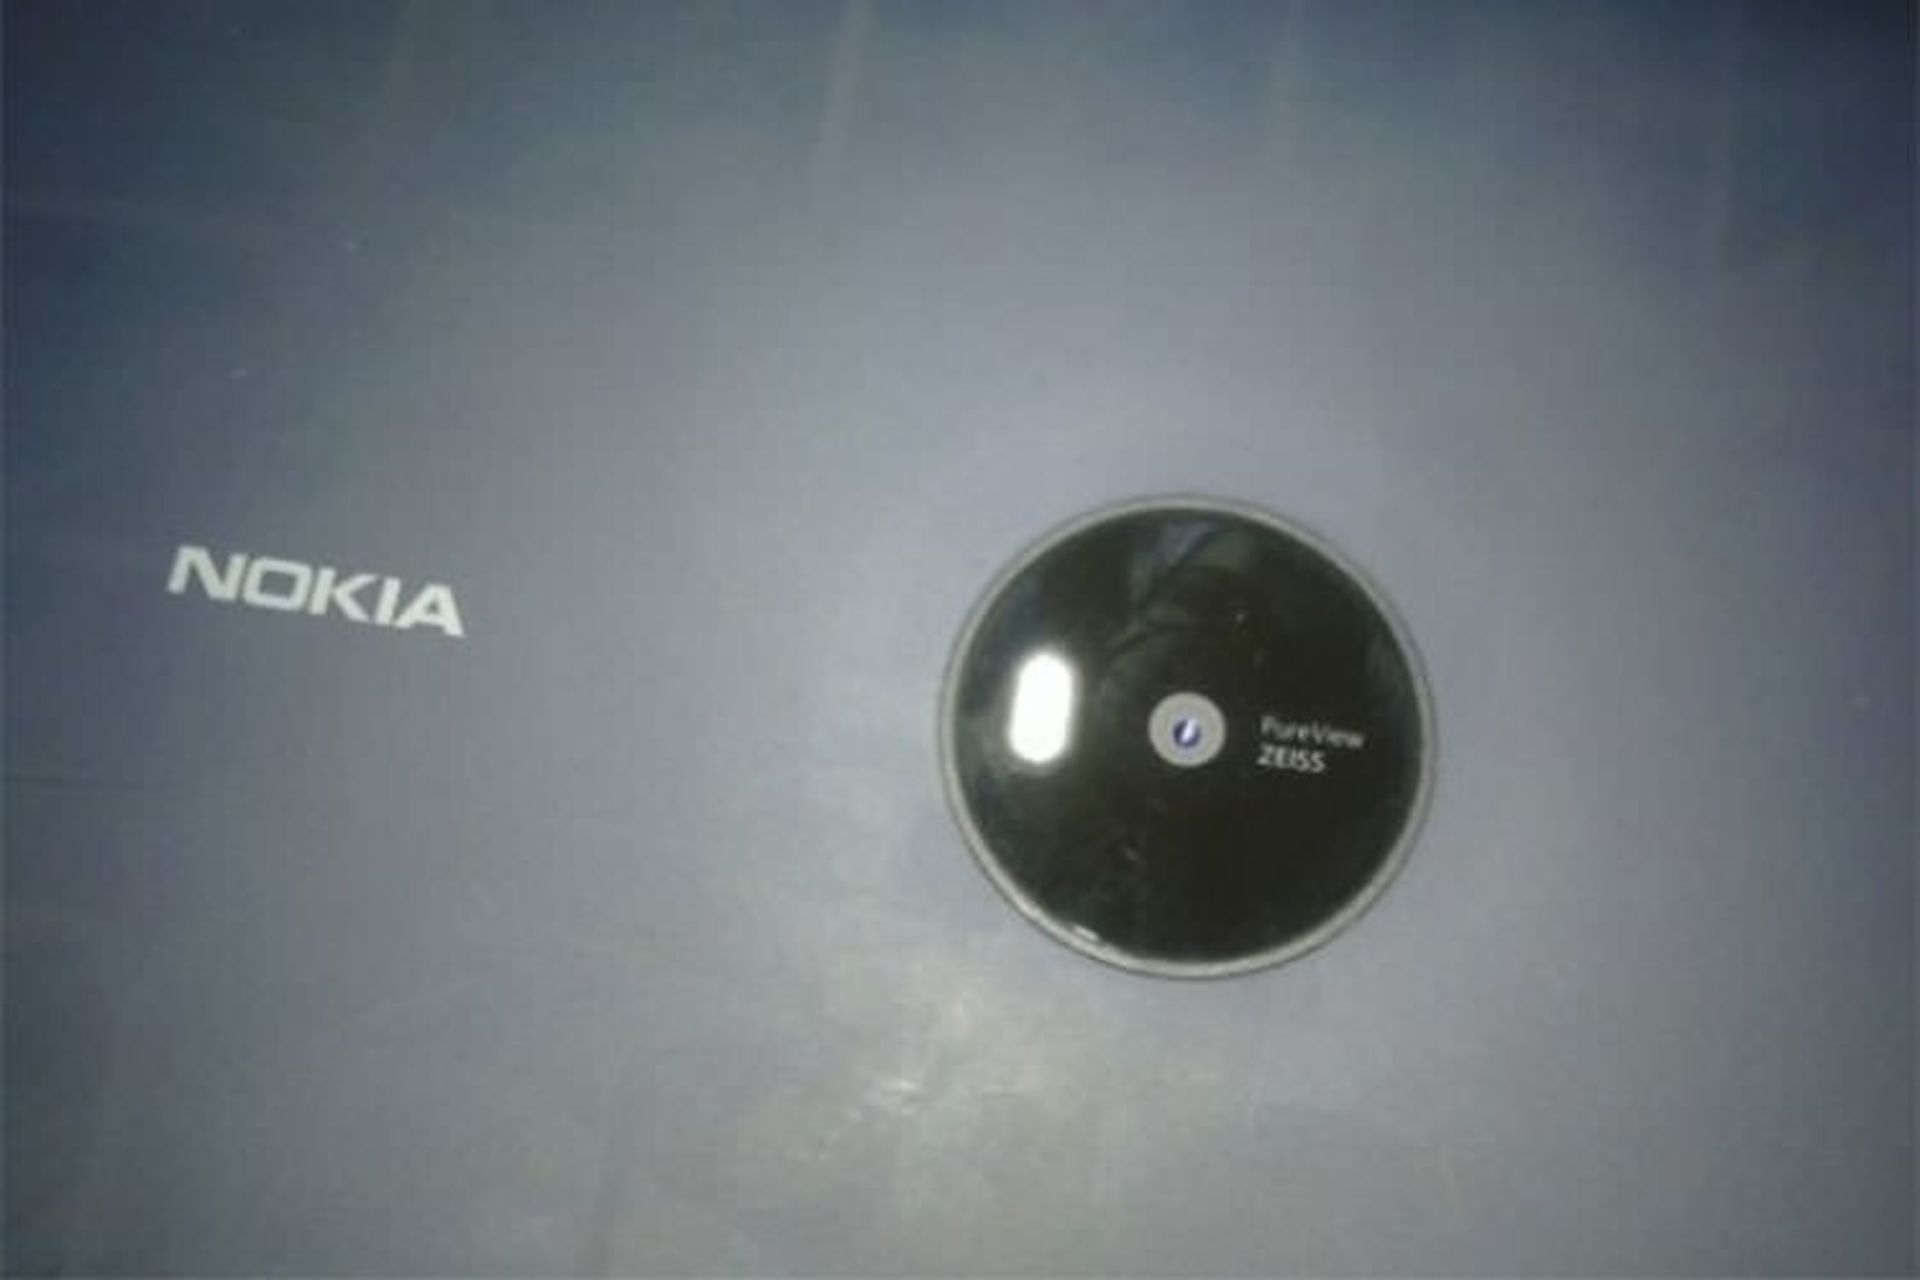 Nokia Lumia 2020